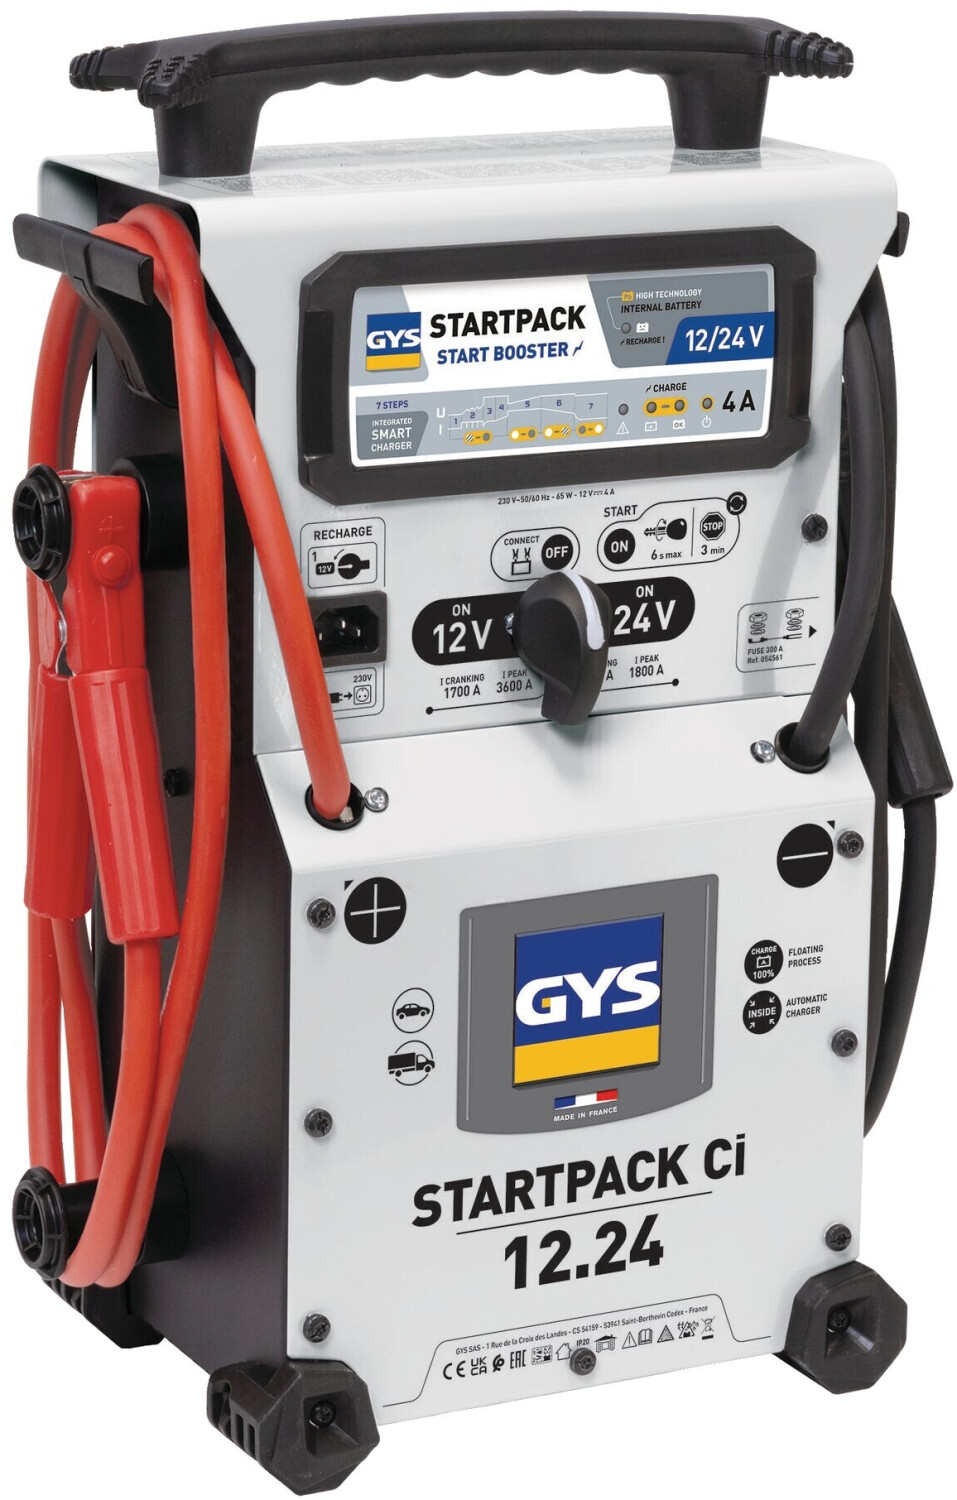 GYS STARTPACK 12.24 CI (024991) ab 925,17 €